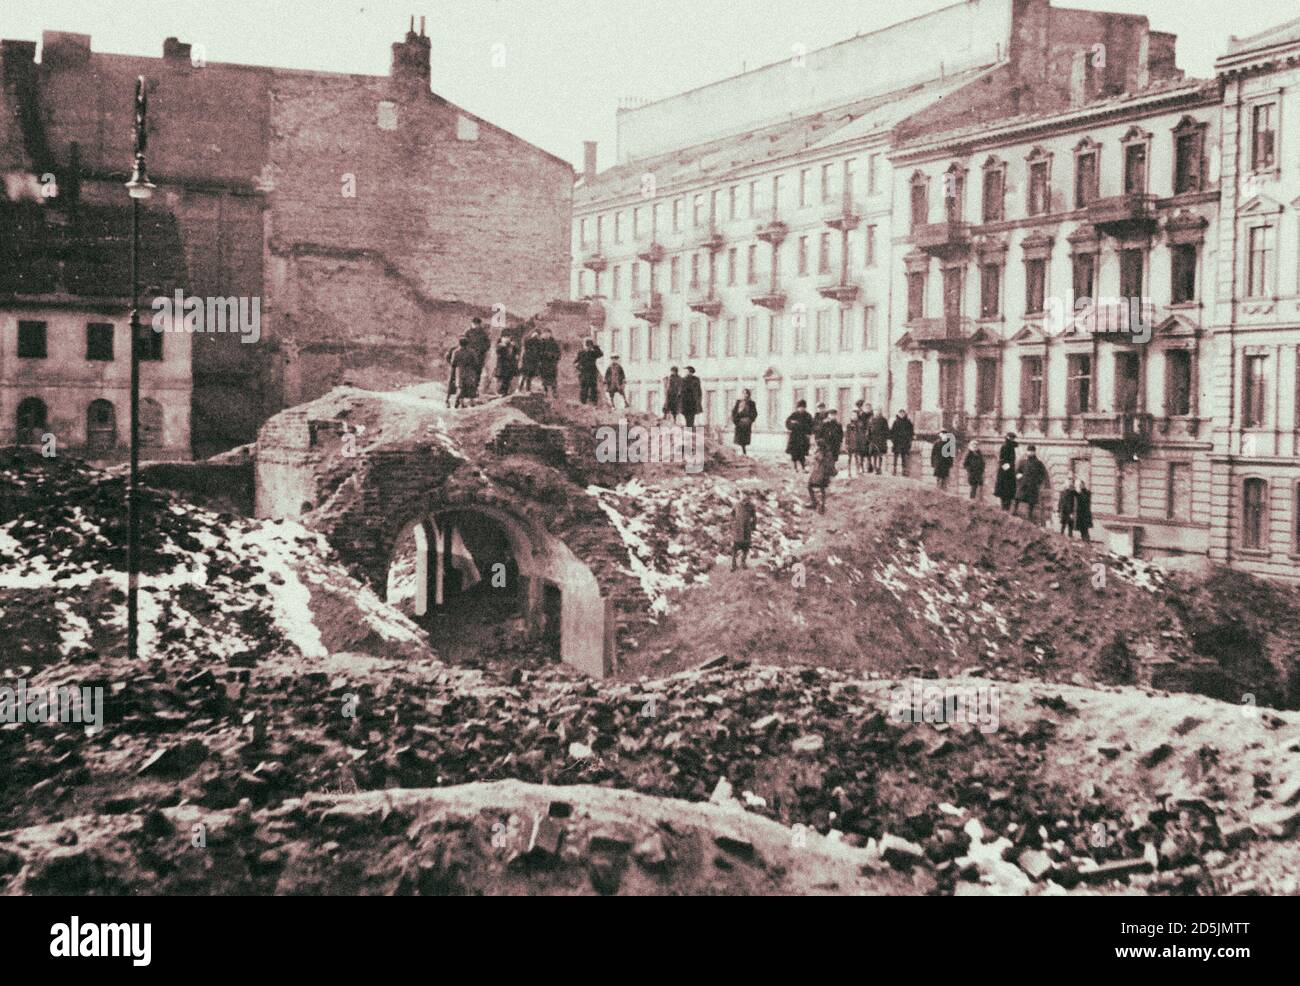 Foto des zerstörten Warschauer Ghettos. Warschau, Polen. 1945 nach dem Warschauer Ghettoaufstand wurde das Ghetto vollständig zerstört. Von den mehr als 56,000 Stockfoto